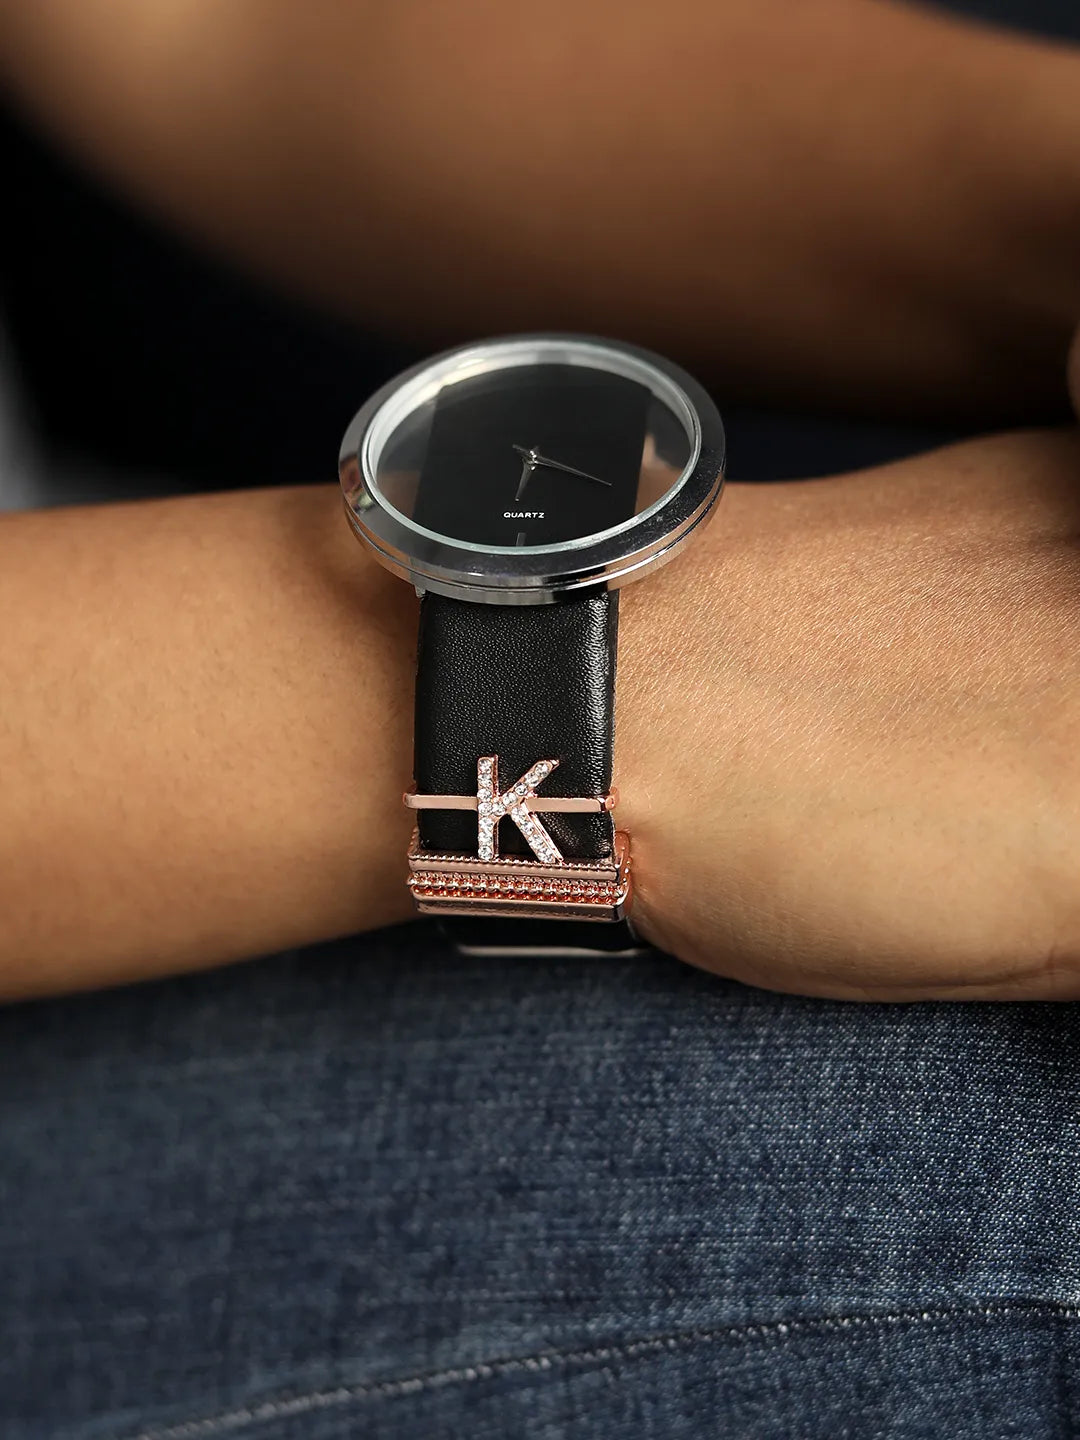 Round Analog Watch With K Initial Watch Charm - Black